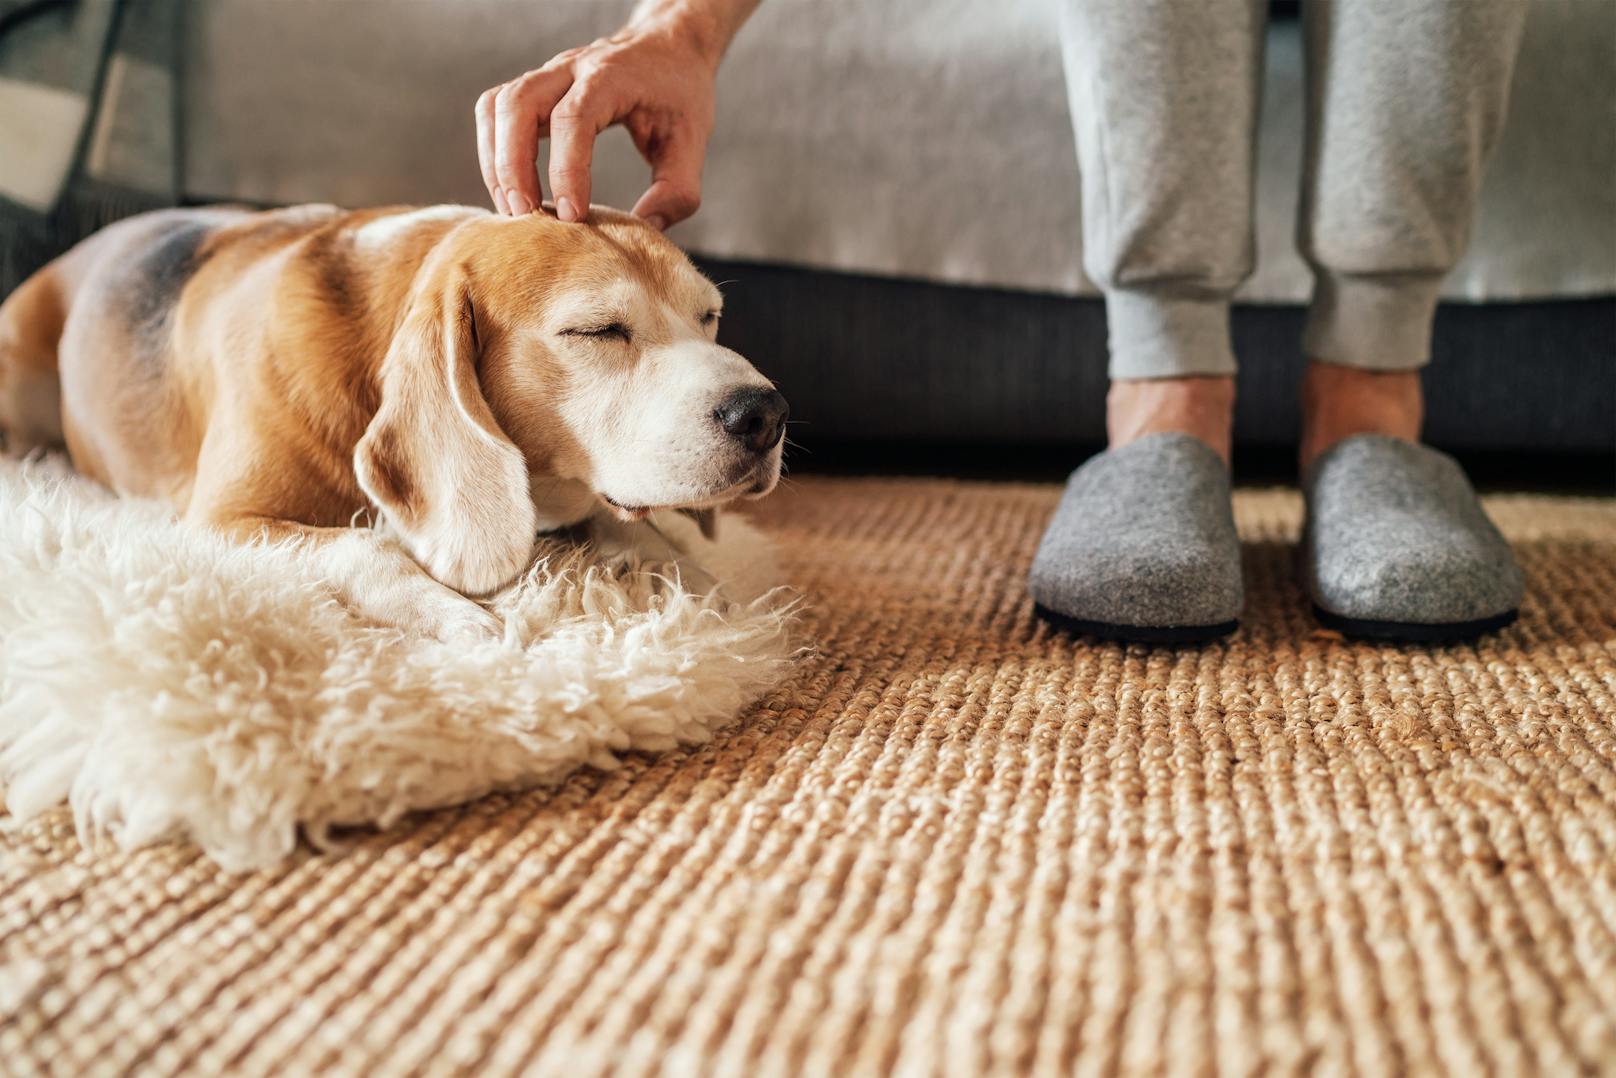 3. Dein Hund ignoriert dich: Wenn dein Hund dich ignoriert oder wegschaut, wenn du versuchst ihn anzuschauen, zeigt er dir damit seine Unzufriedenheit. Möglicherweise hilft es ruhig zu sprechen und ihm die Ohren zu kraulen.